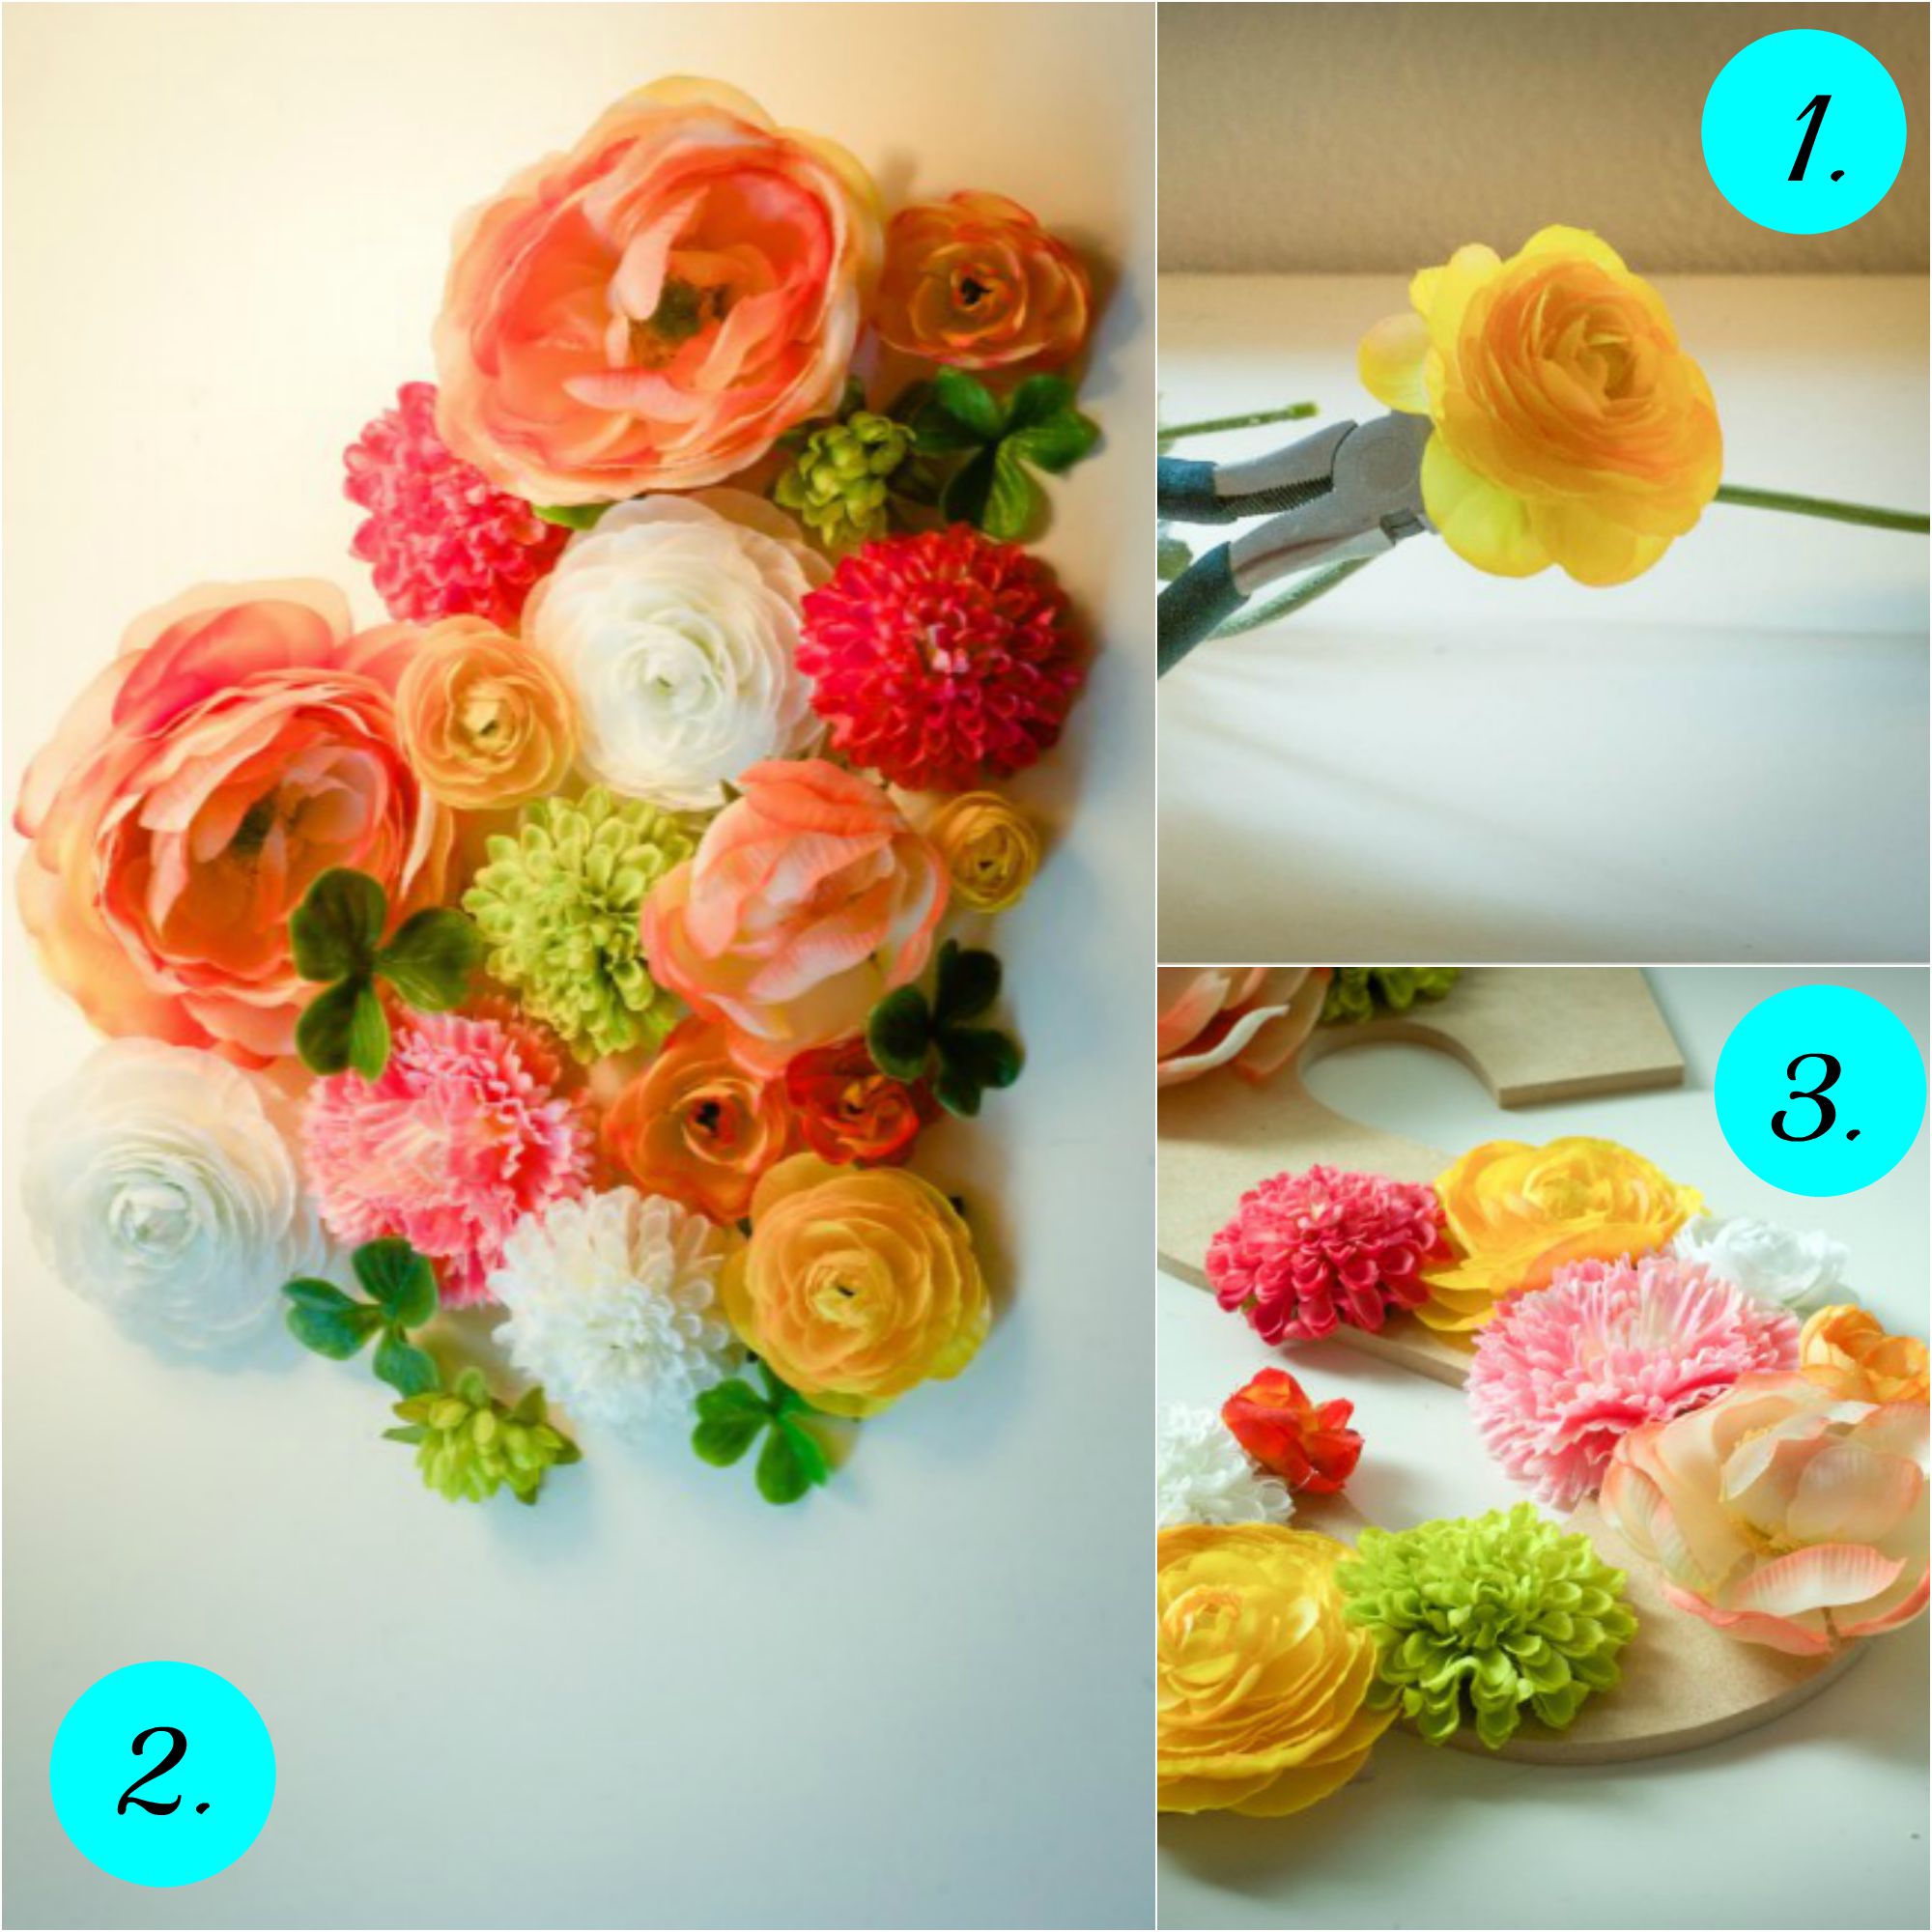 Postupak izrade: isecite drške cveća i poređajte cvetove na slova pre lepljenja.